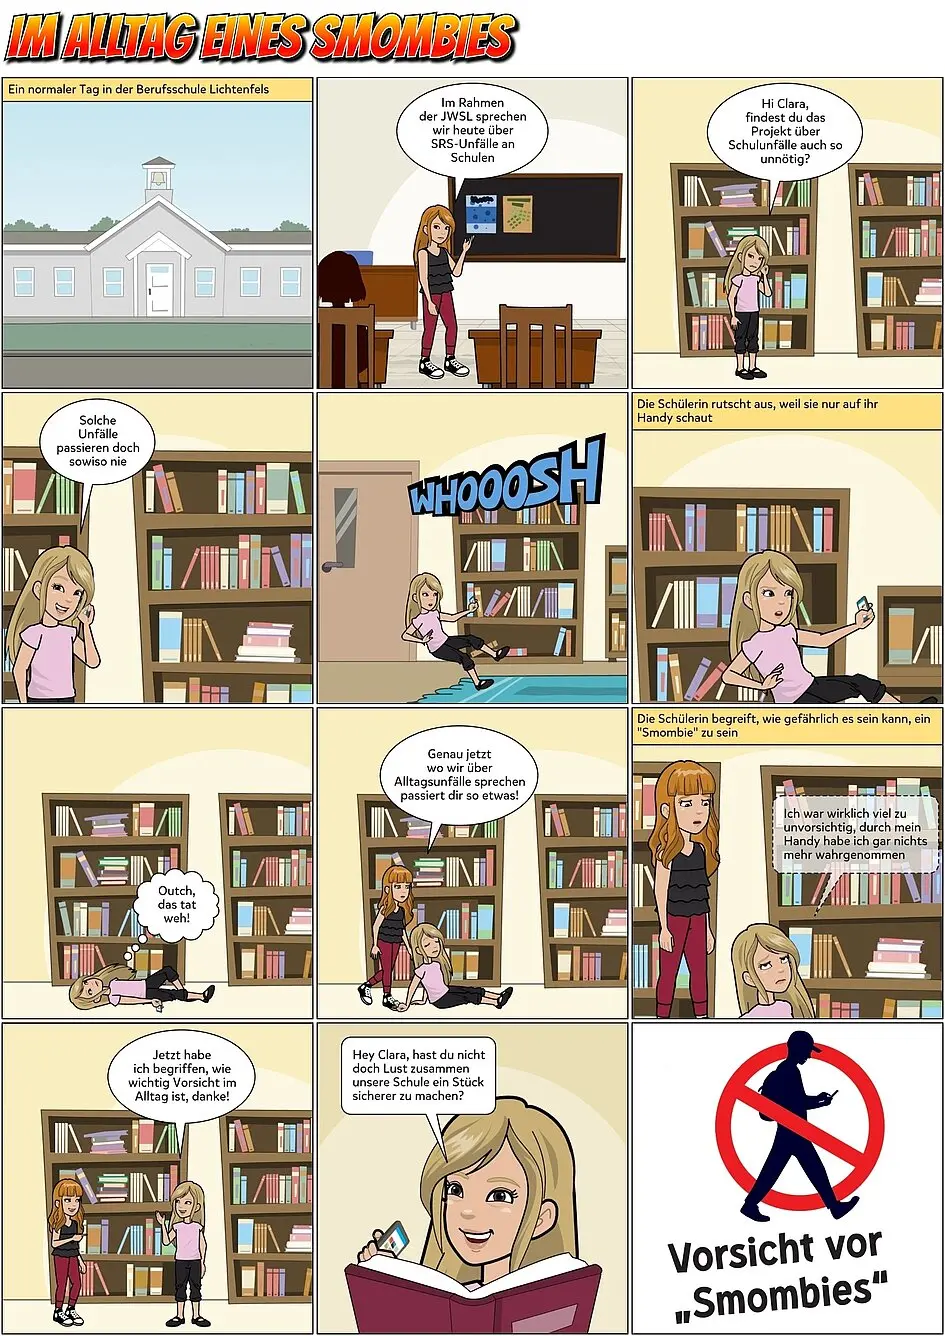 Das Bild mit dem Titel "Im Alltag eines Smombies" zeigt ein Comic-Ausschnitt, in dem zwei Mädchen in einer Bibliothek sind und ein Mädchen aufgrund ihres Handys einen Unfall hat.